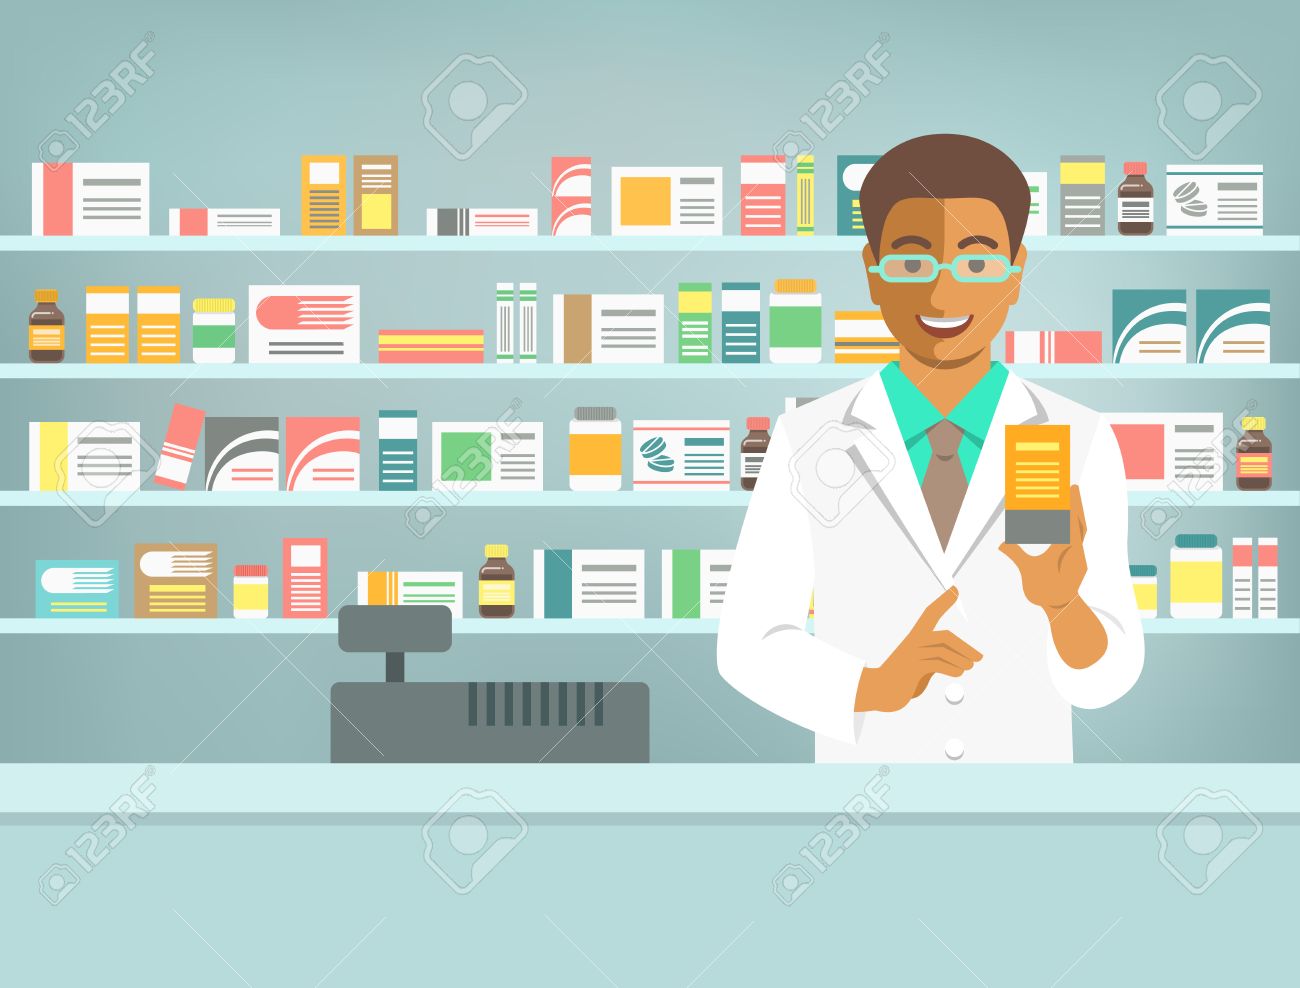 pharmacie.jpg